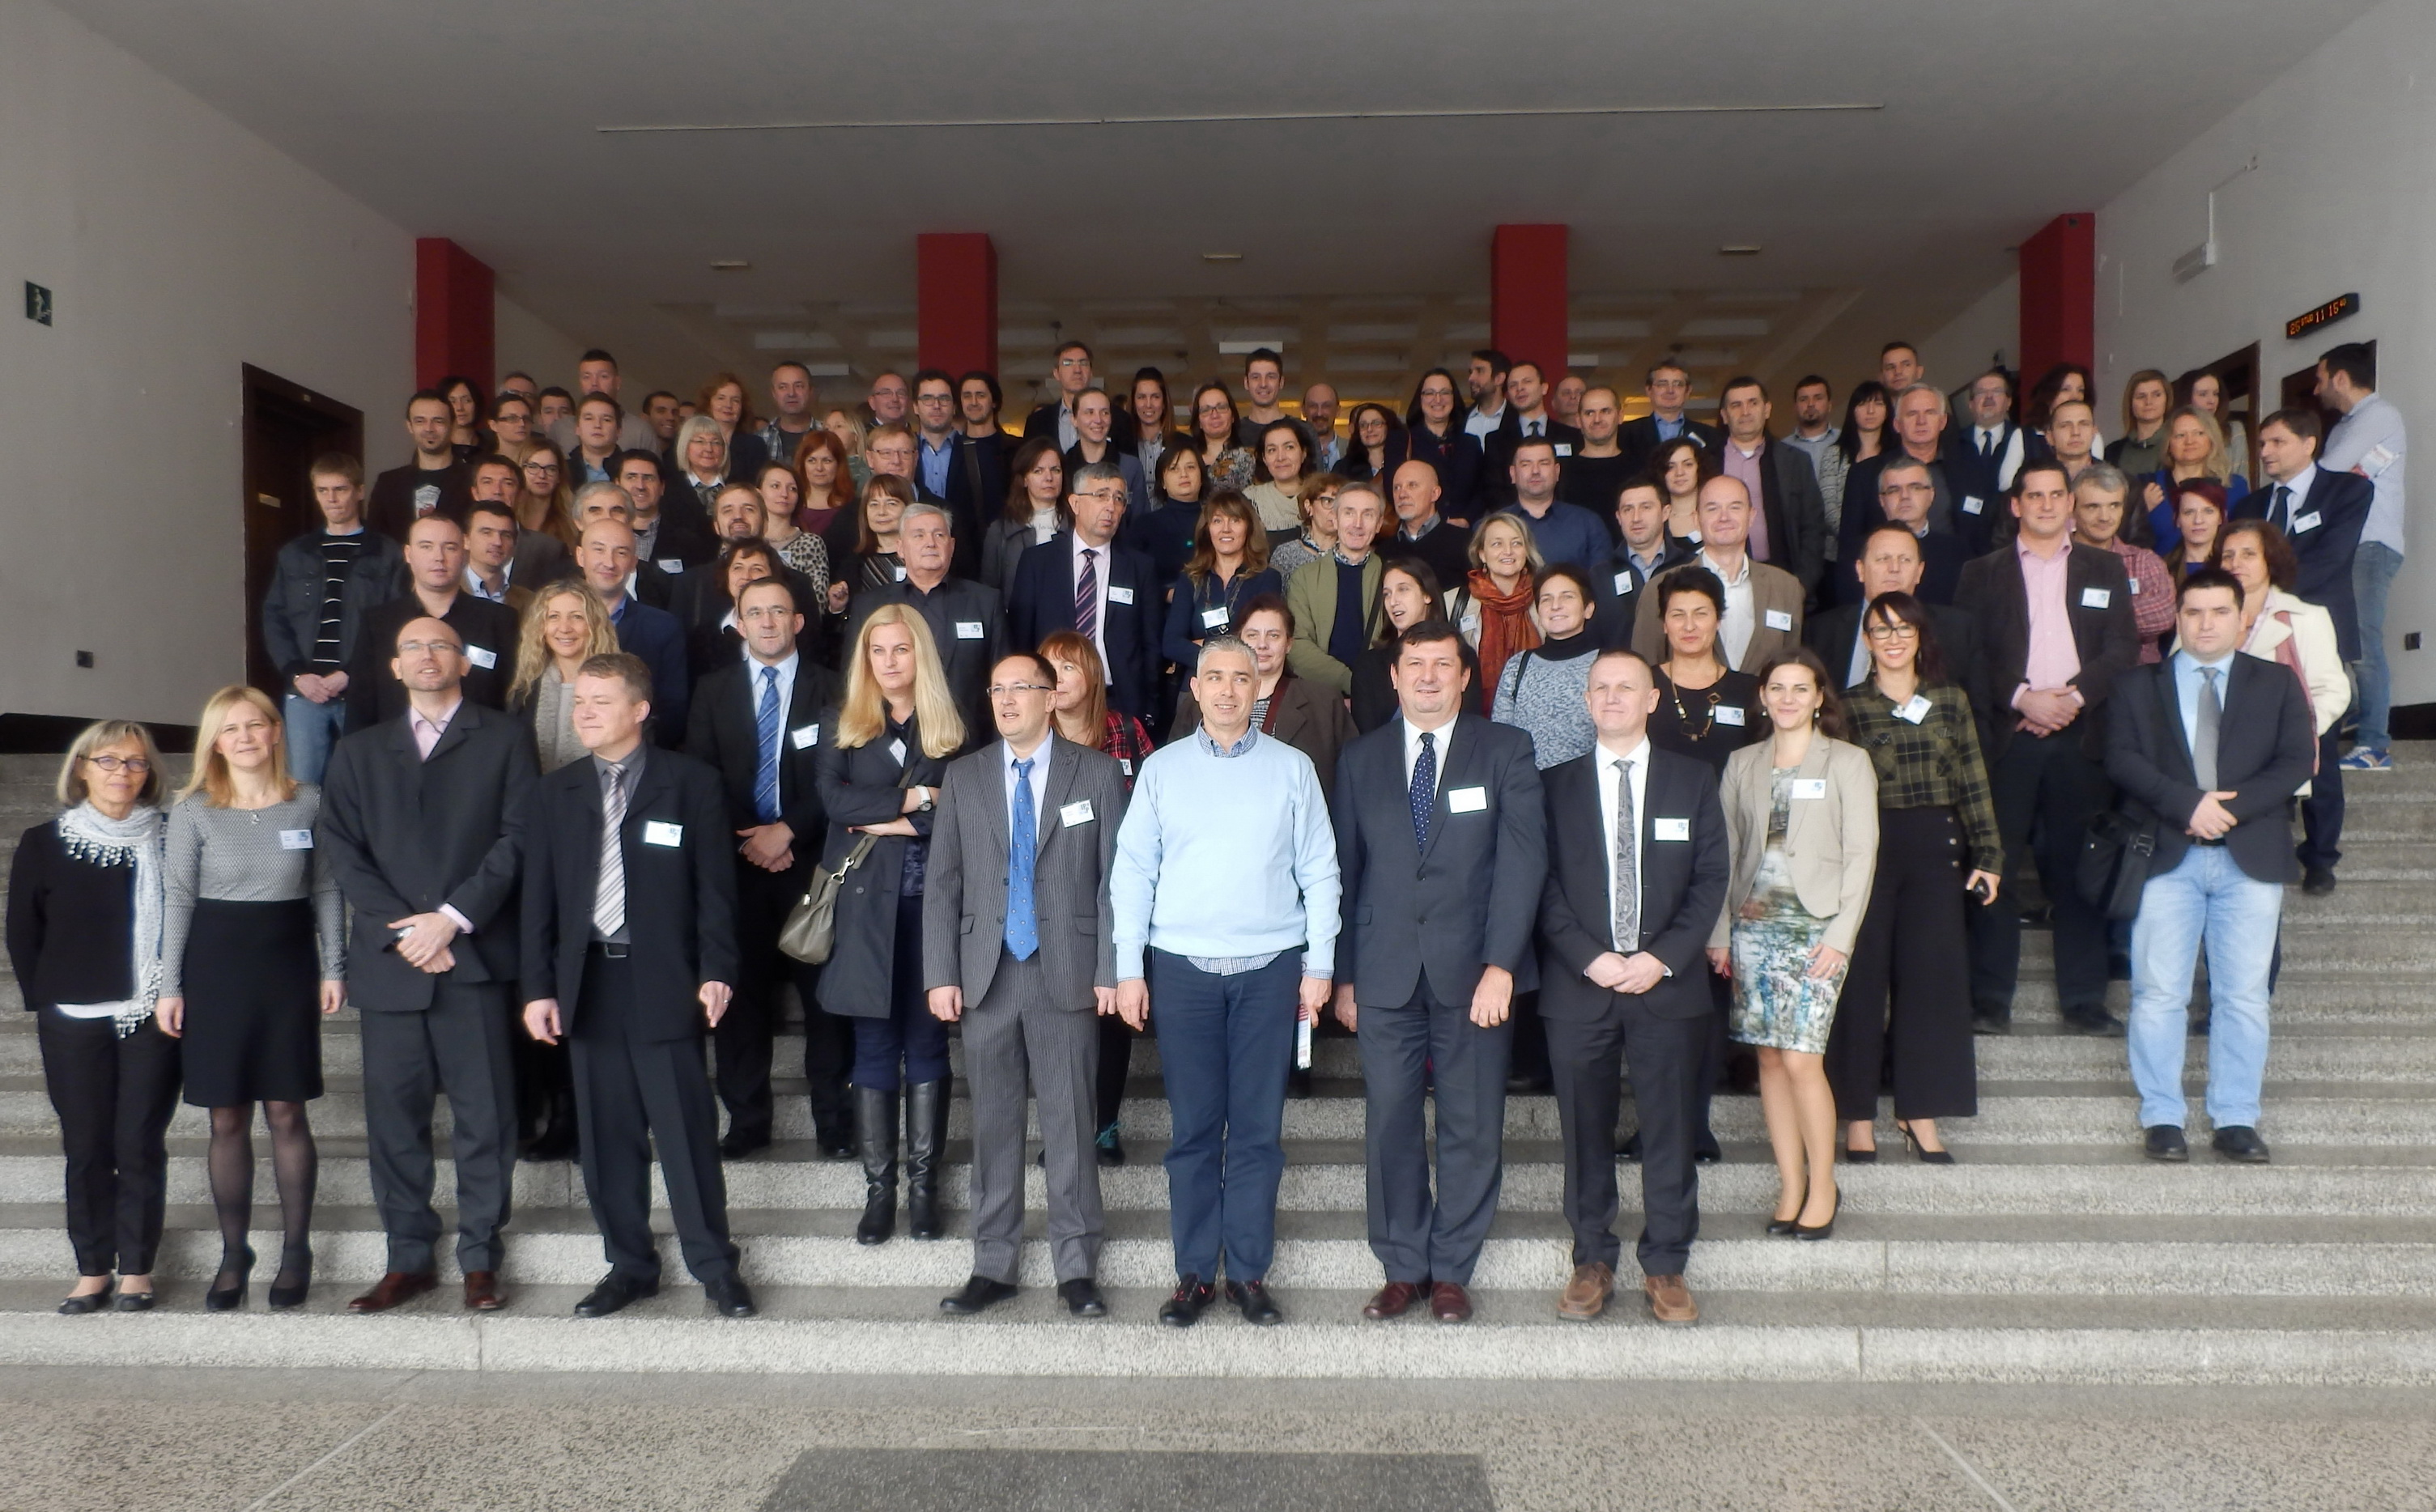 Slika prikazuje zajedničku fotografiju učesnika konferencije Dani IPP-a 2016.